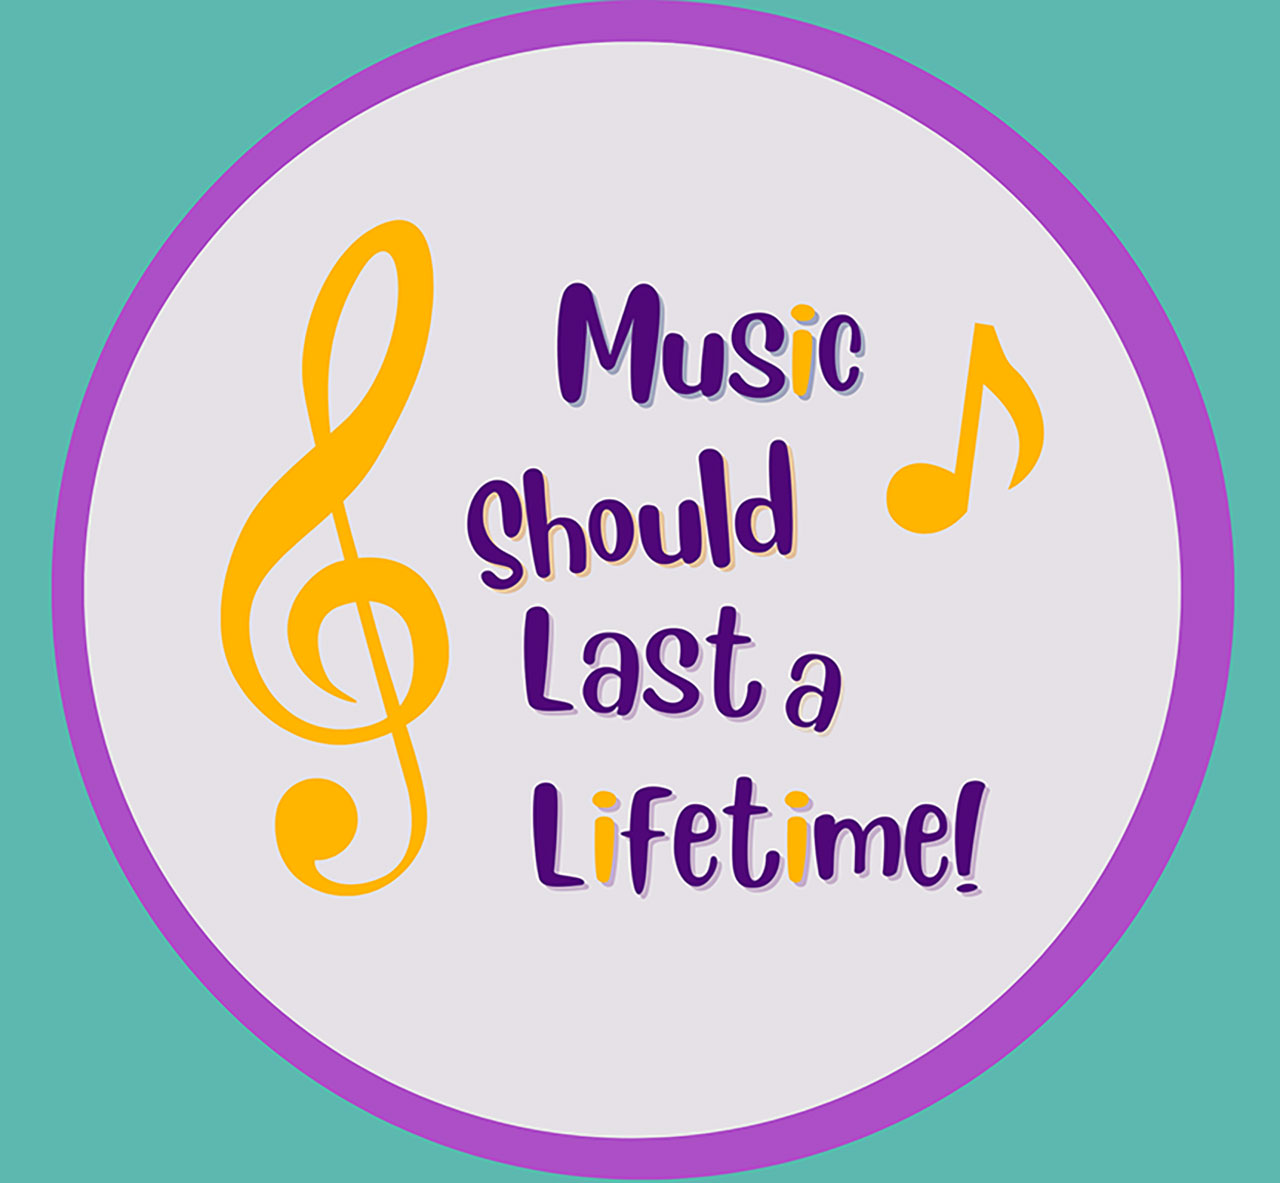 Music should last a lifetime!